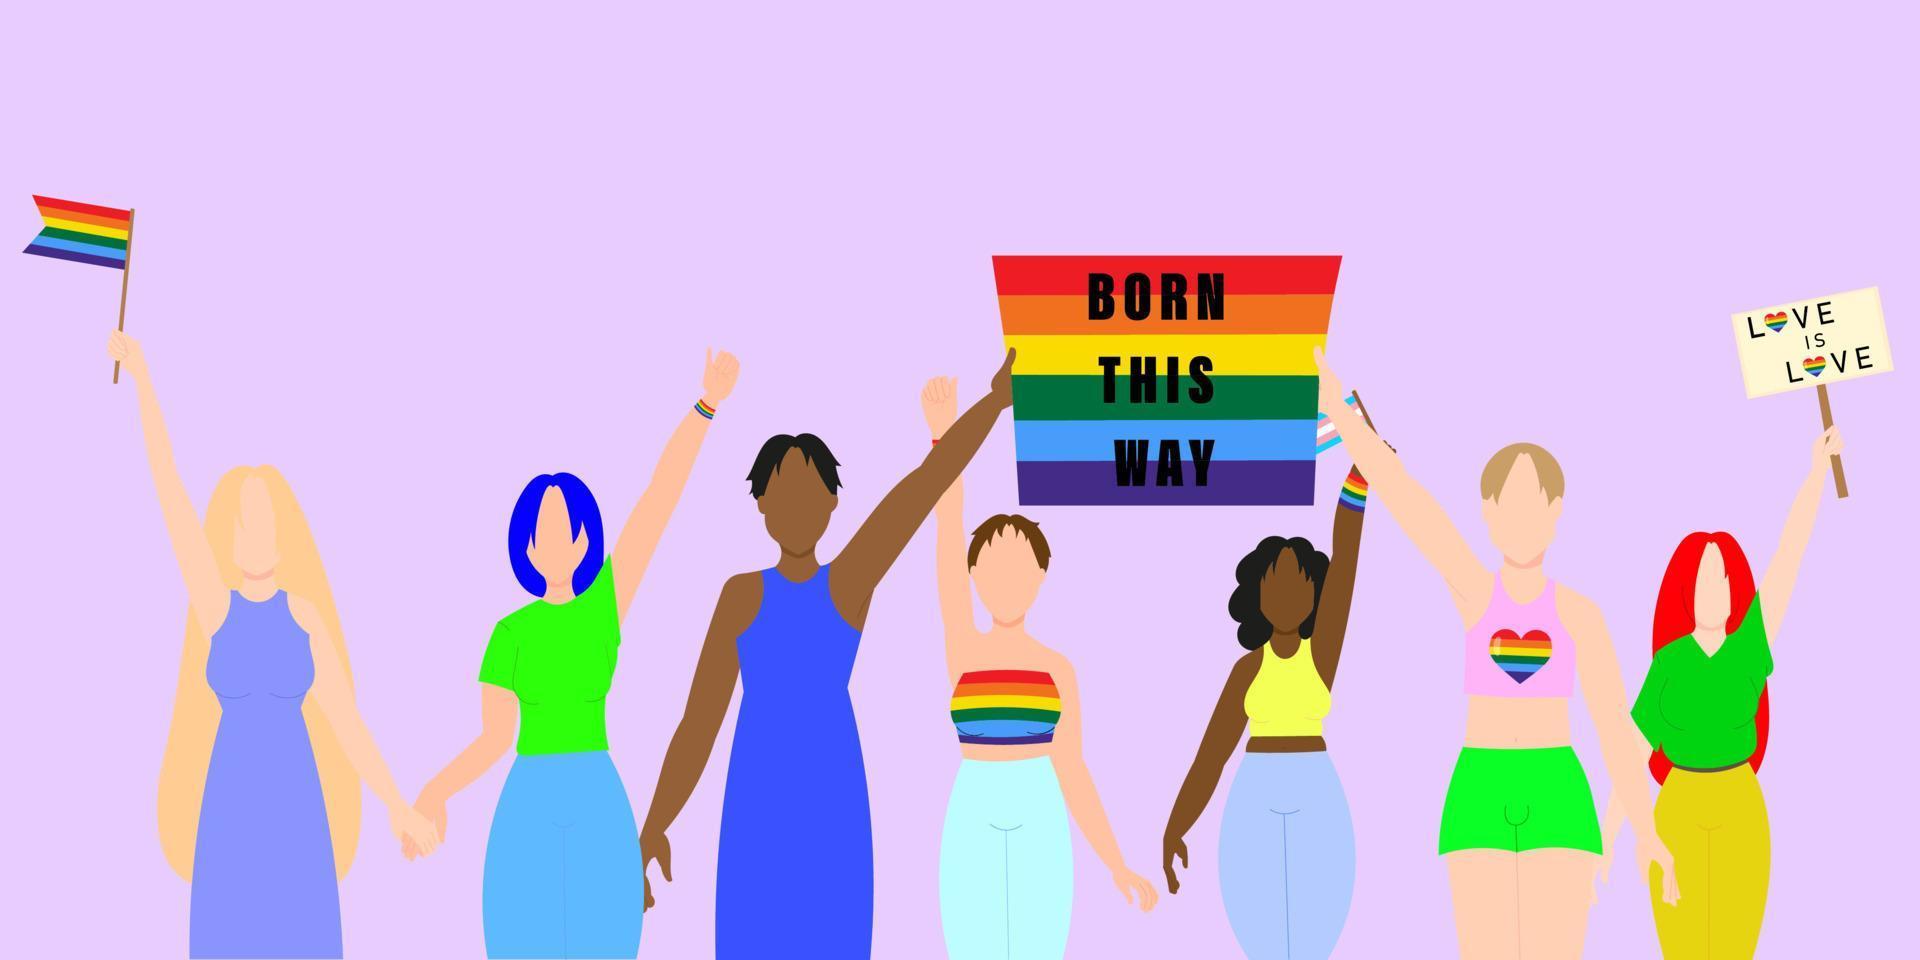 desfile del Orgullo Gay. un grupo interracial de gays, lesbianas y transexuales que participan en el orgullo lgbt. ilustración vectorial plana de estilo moderno vector